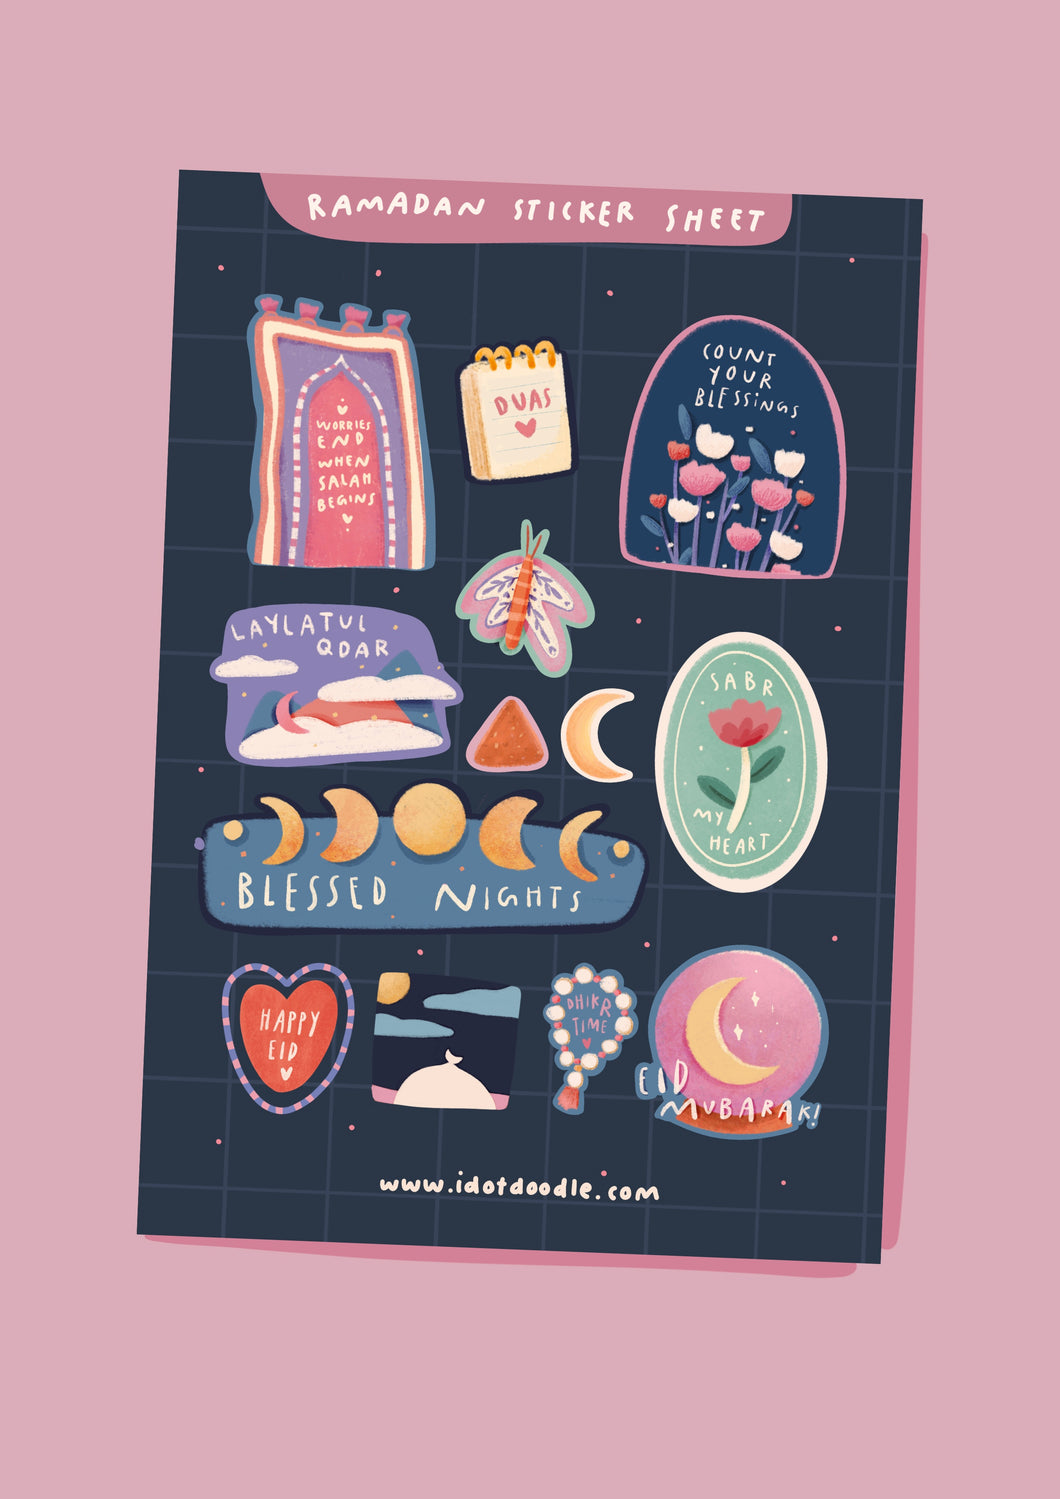 **New** Idotdoodle Ramadan Sticker Sheet